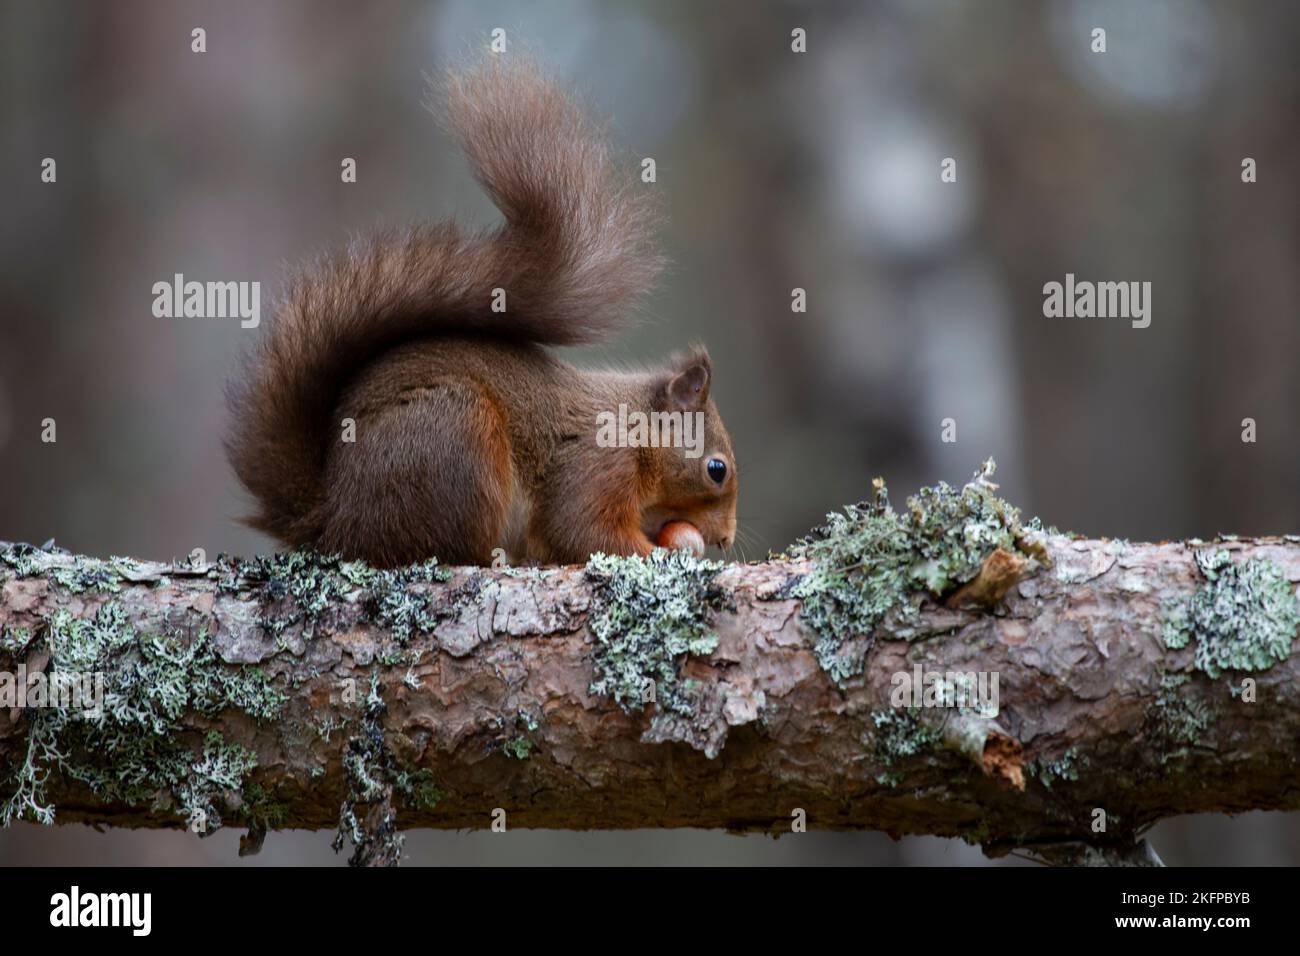 Uno scoiattolo rosso eurasiatico Sciurus vulgaris con una coda invernale boscata che mangia una nocciola su un ramo di albero coperto di lichene in Scozia Foto Stock